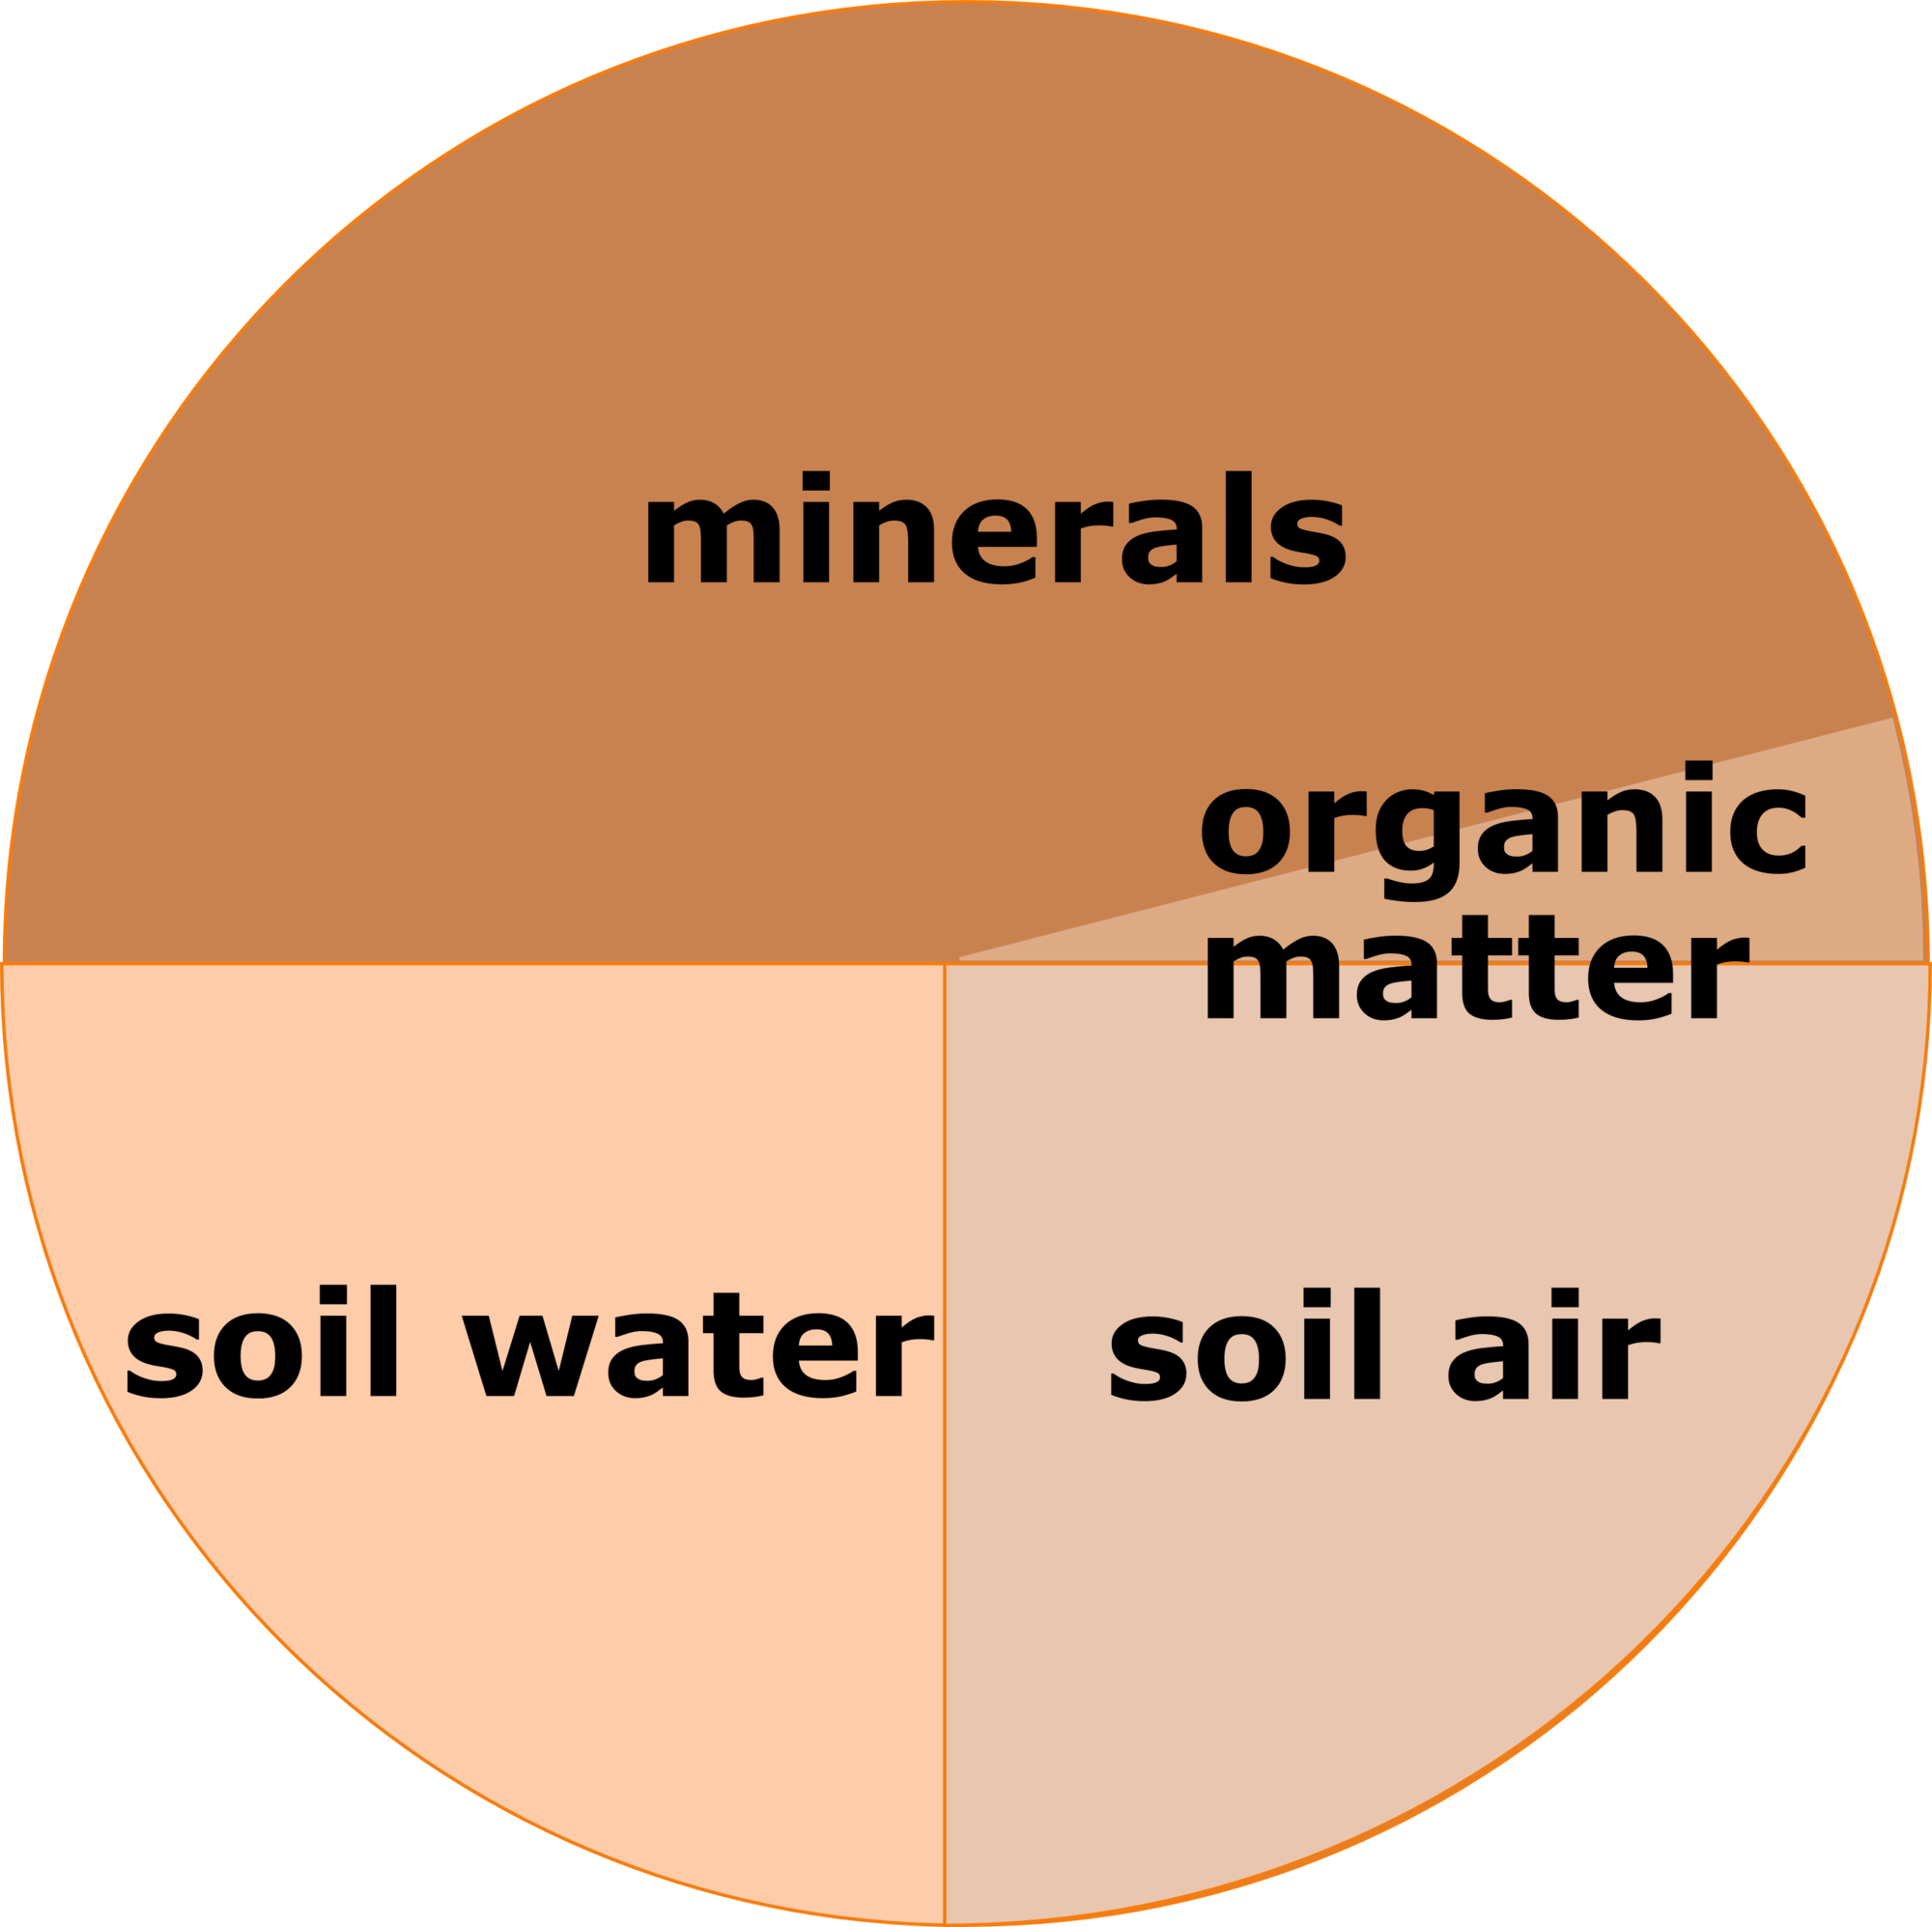 Soil composition: minerals 46%, soil air 25%, soil water 25%, organic matter 4%.